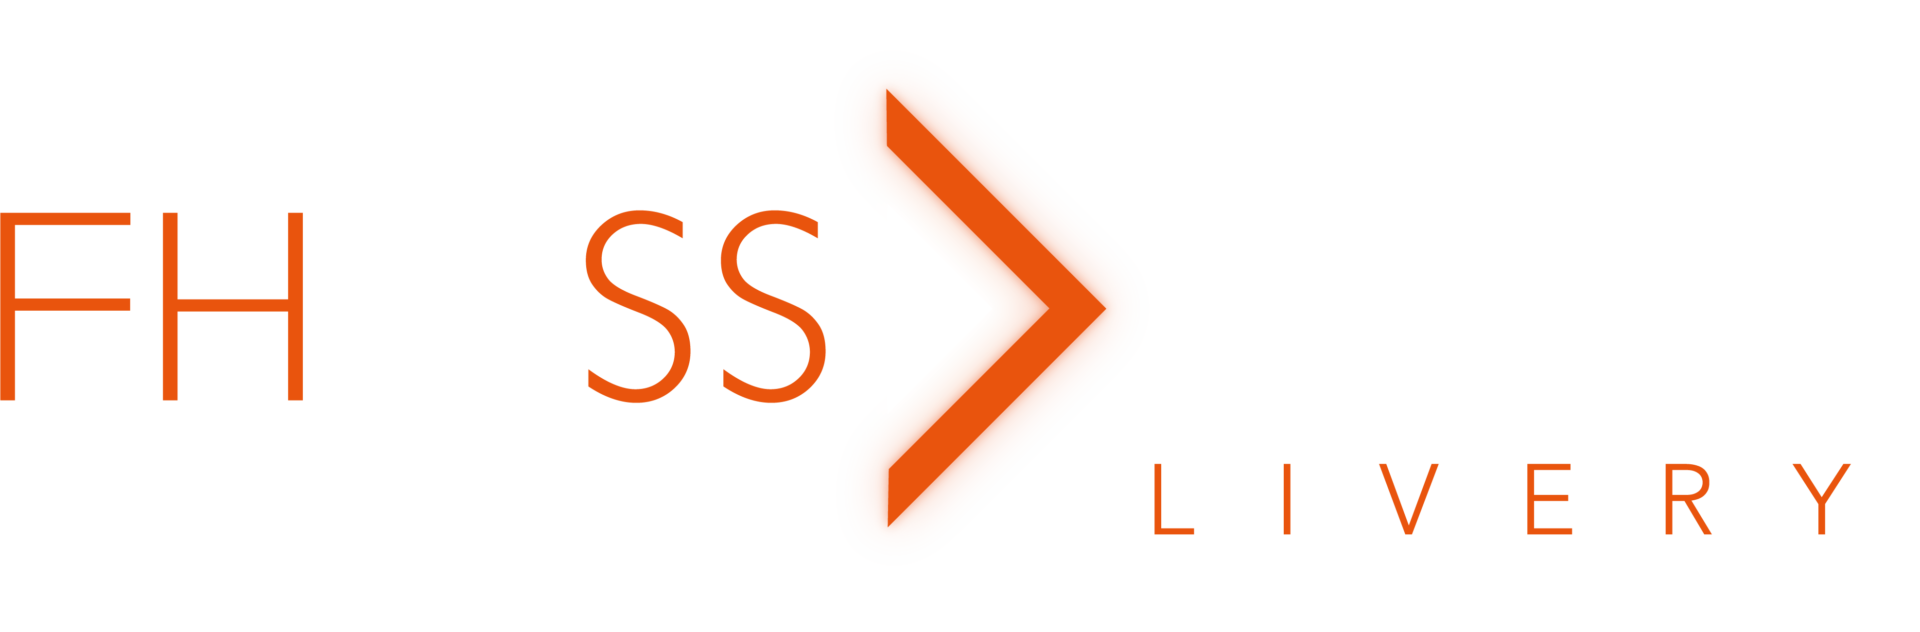 FHOSS Light Livery logo